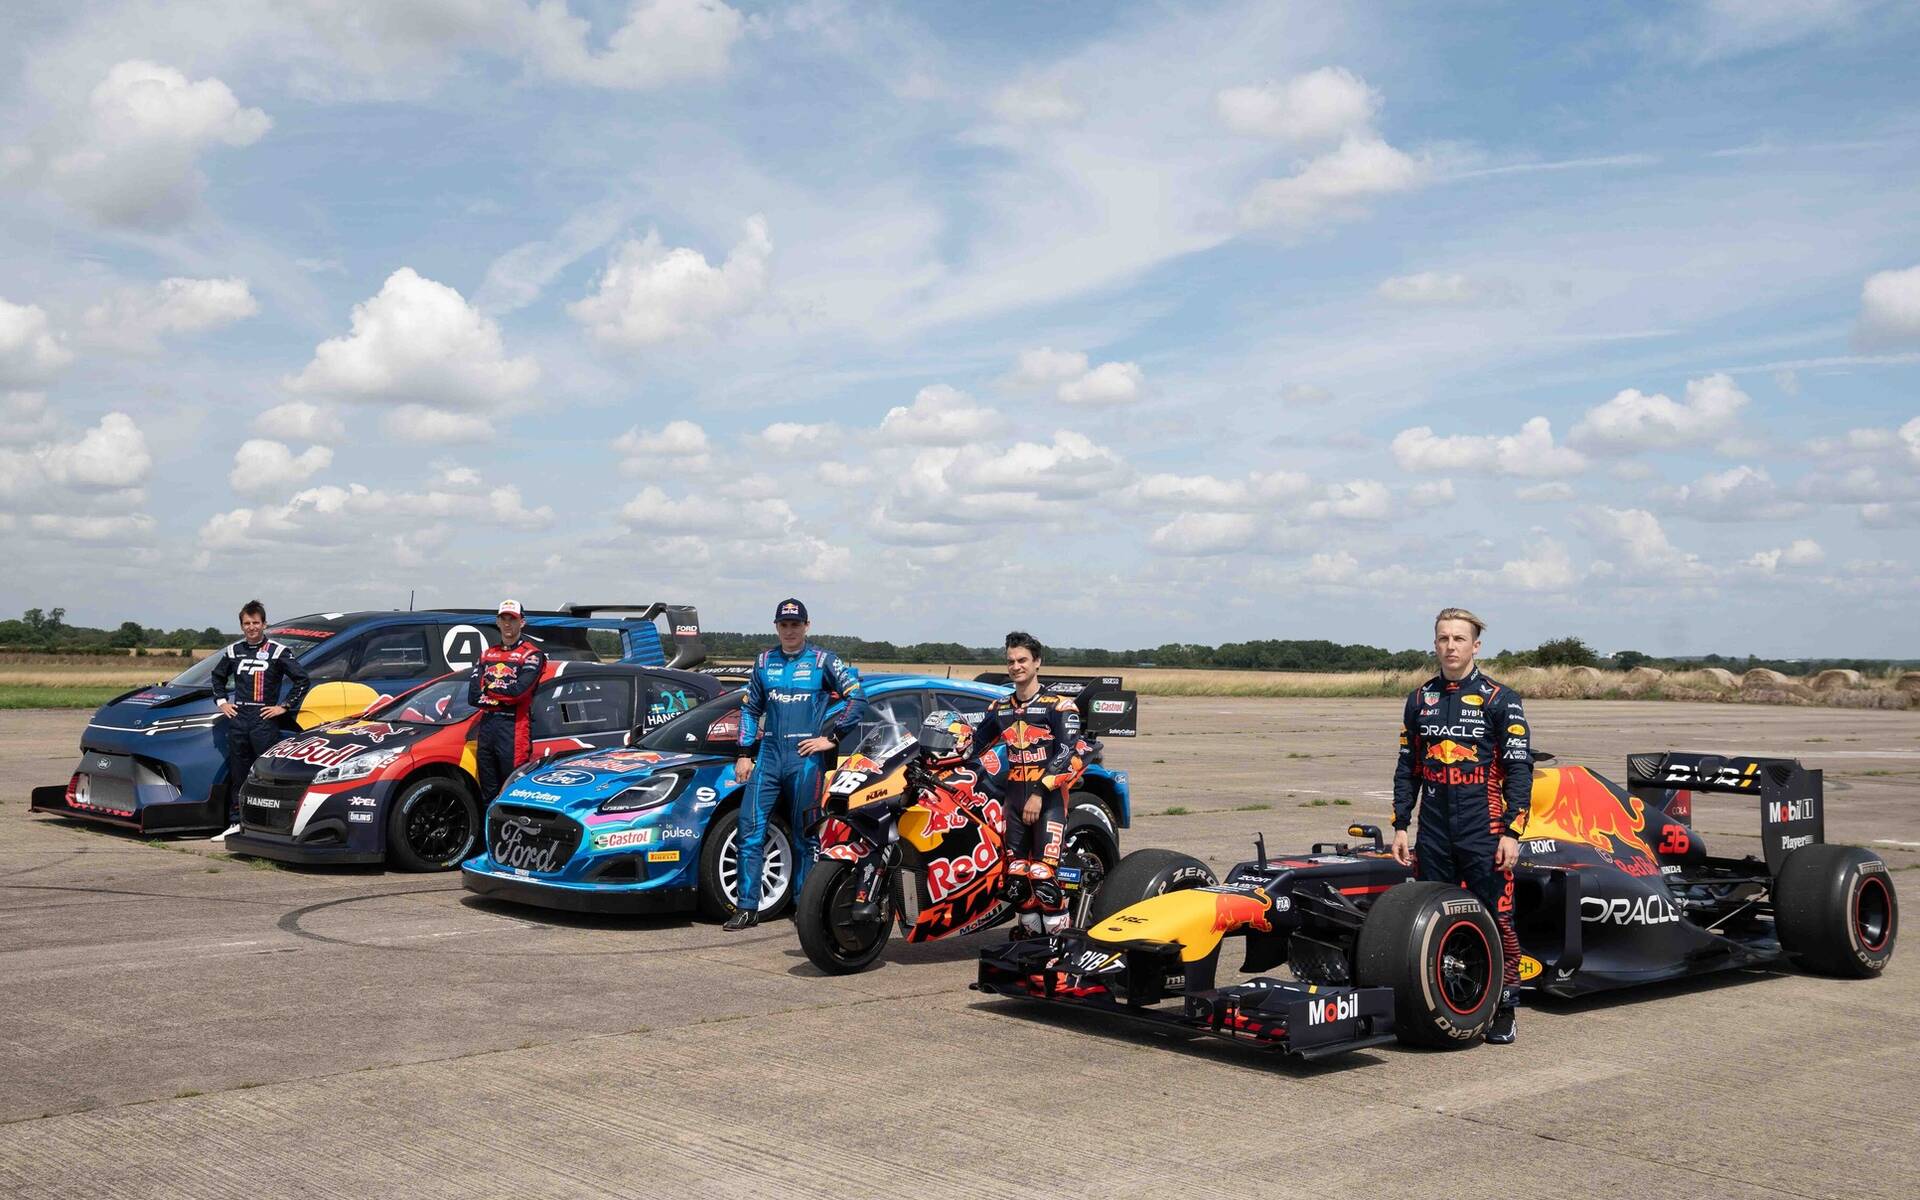 F1: la nouvelle voiture spectaculaire de Mercedes fait hurler Red Bull